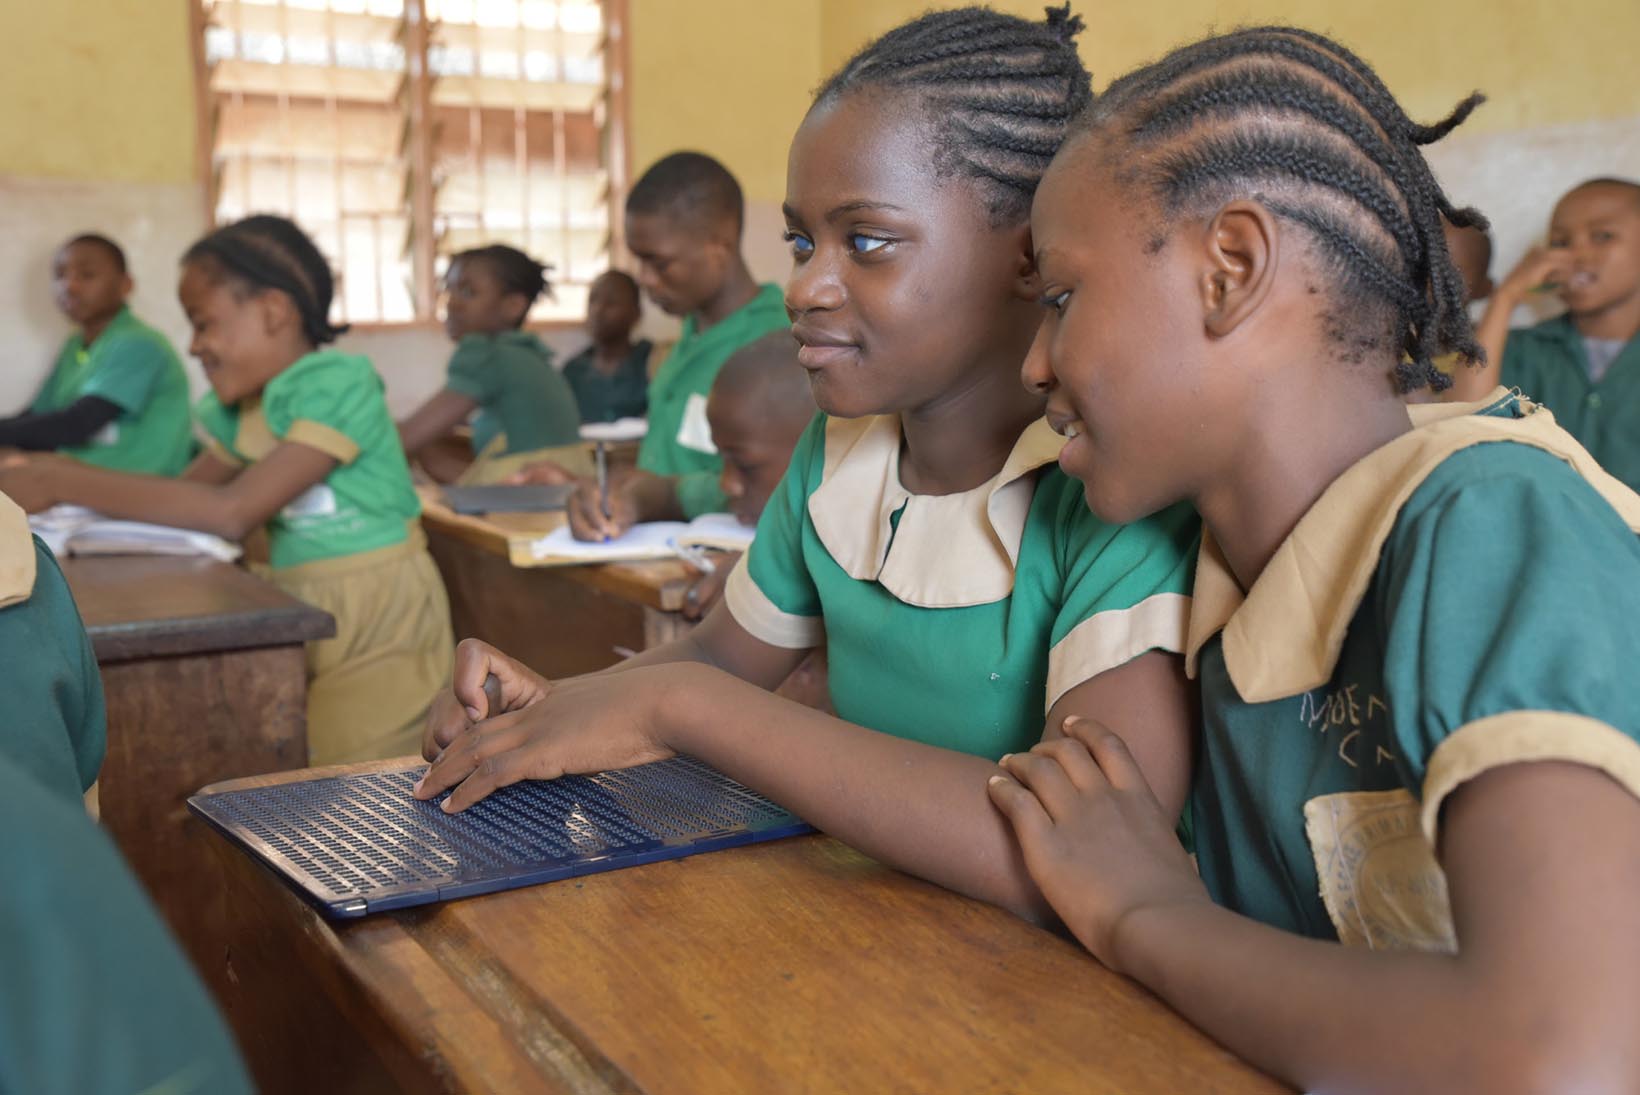 Une petite Camerounaise aveugle écrit des fiches en braille dans une classe d’école. Une fillette, assise à côté d’elle, la regarde faire.